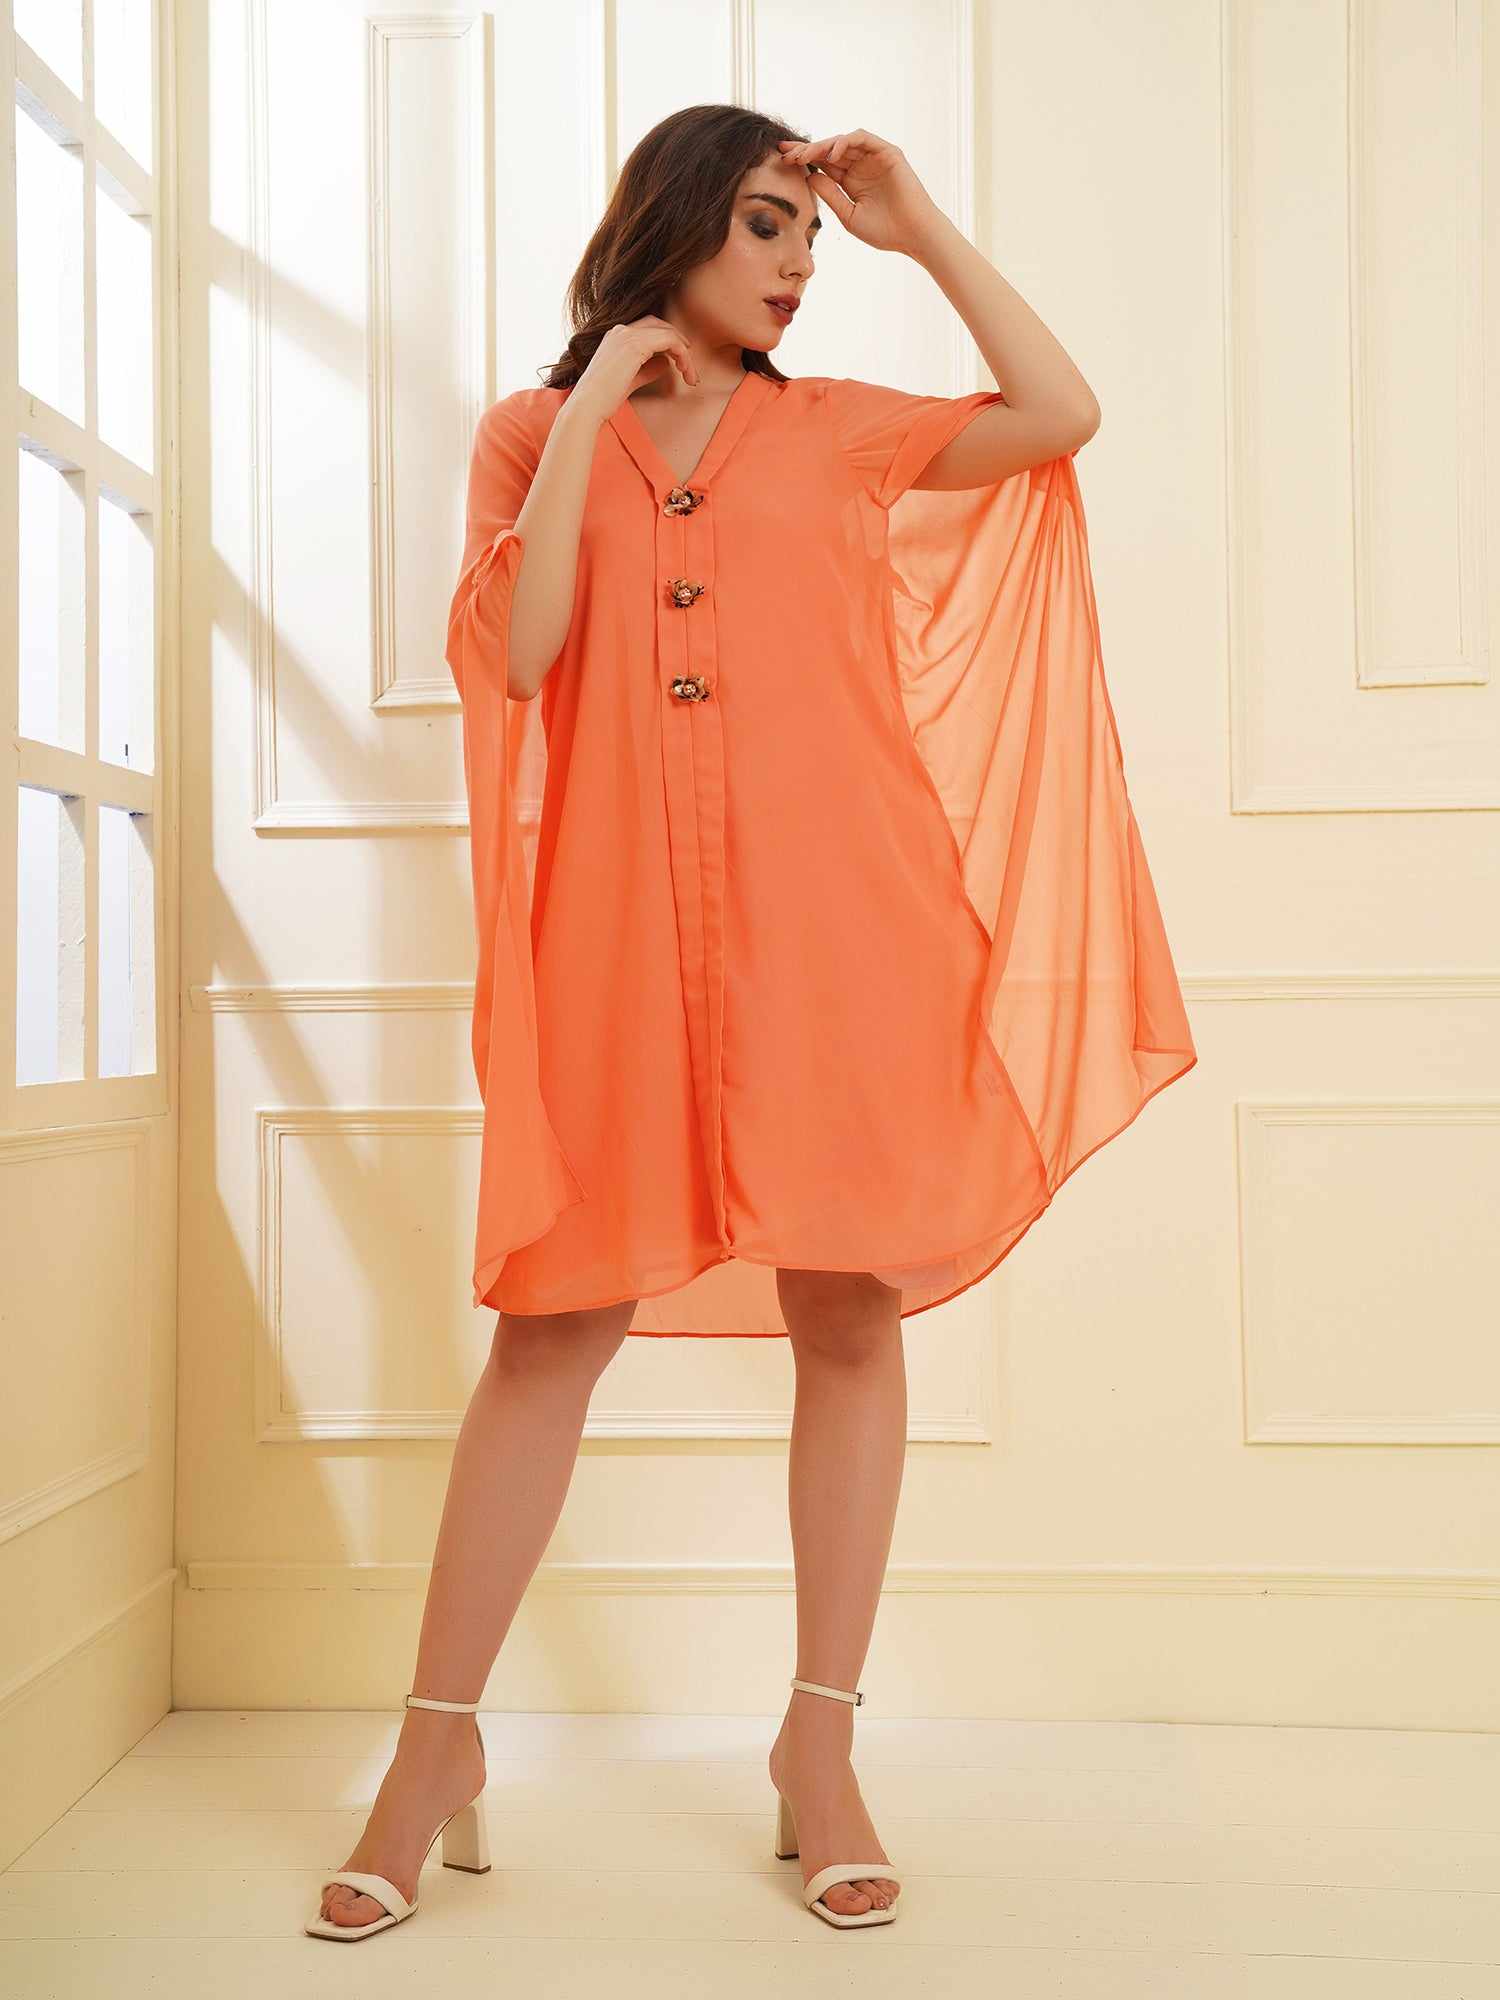 orange dress with placket embellishment